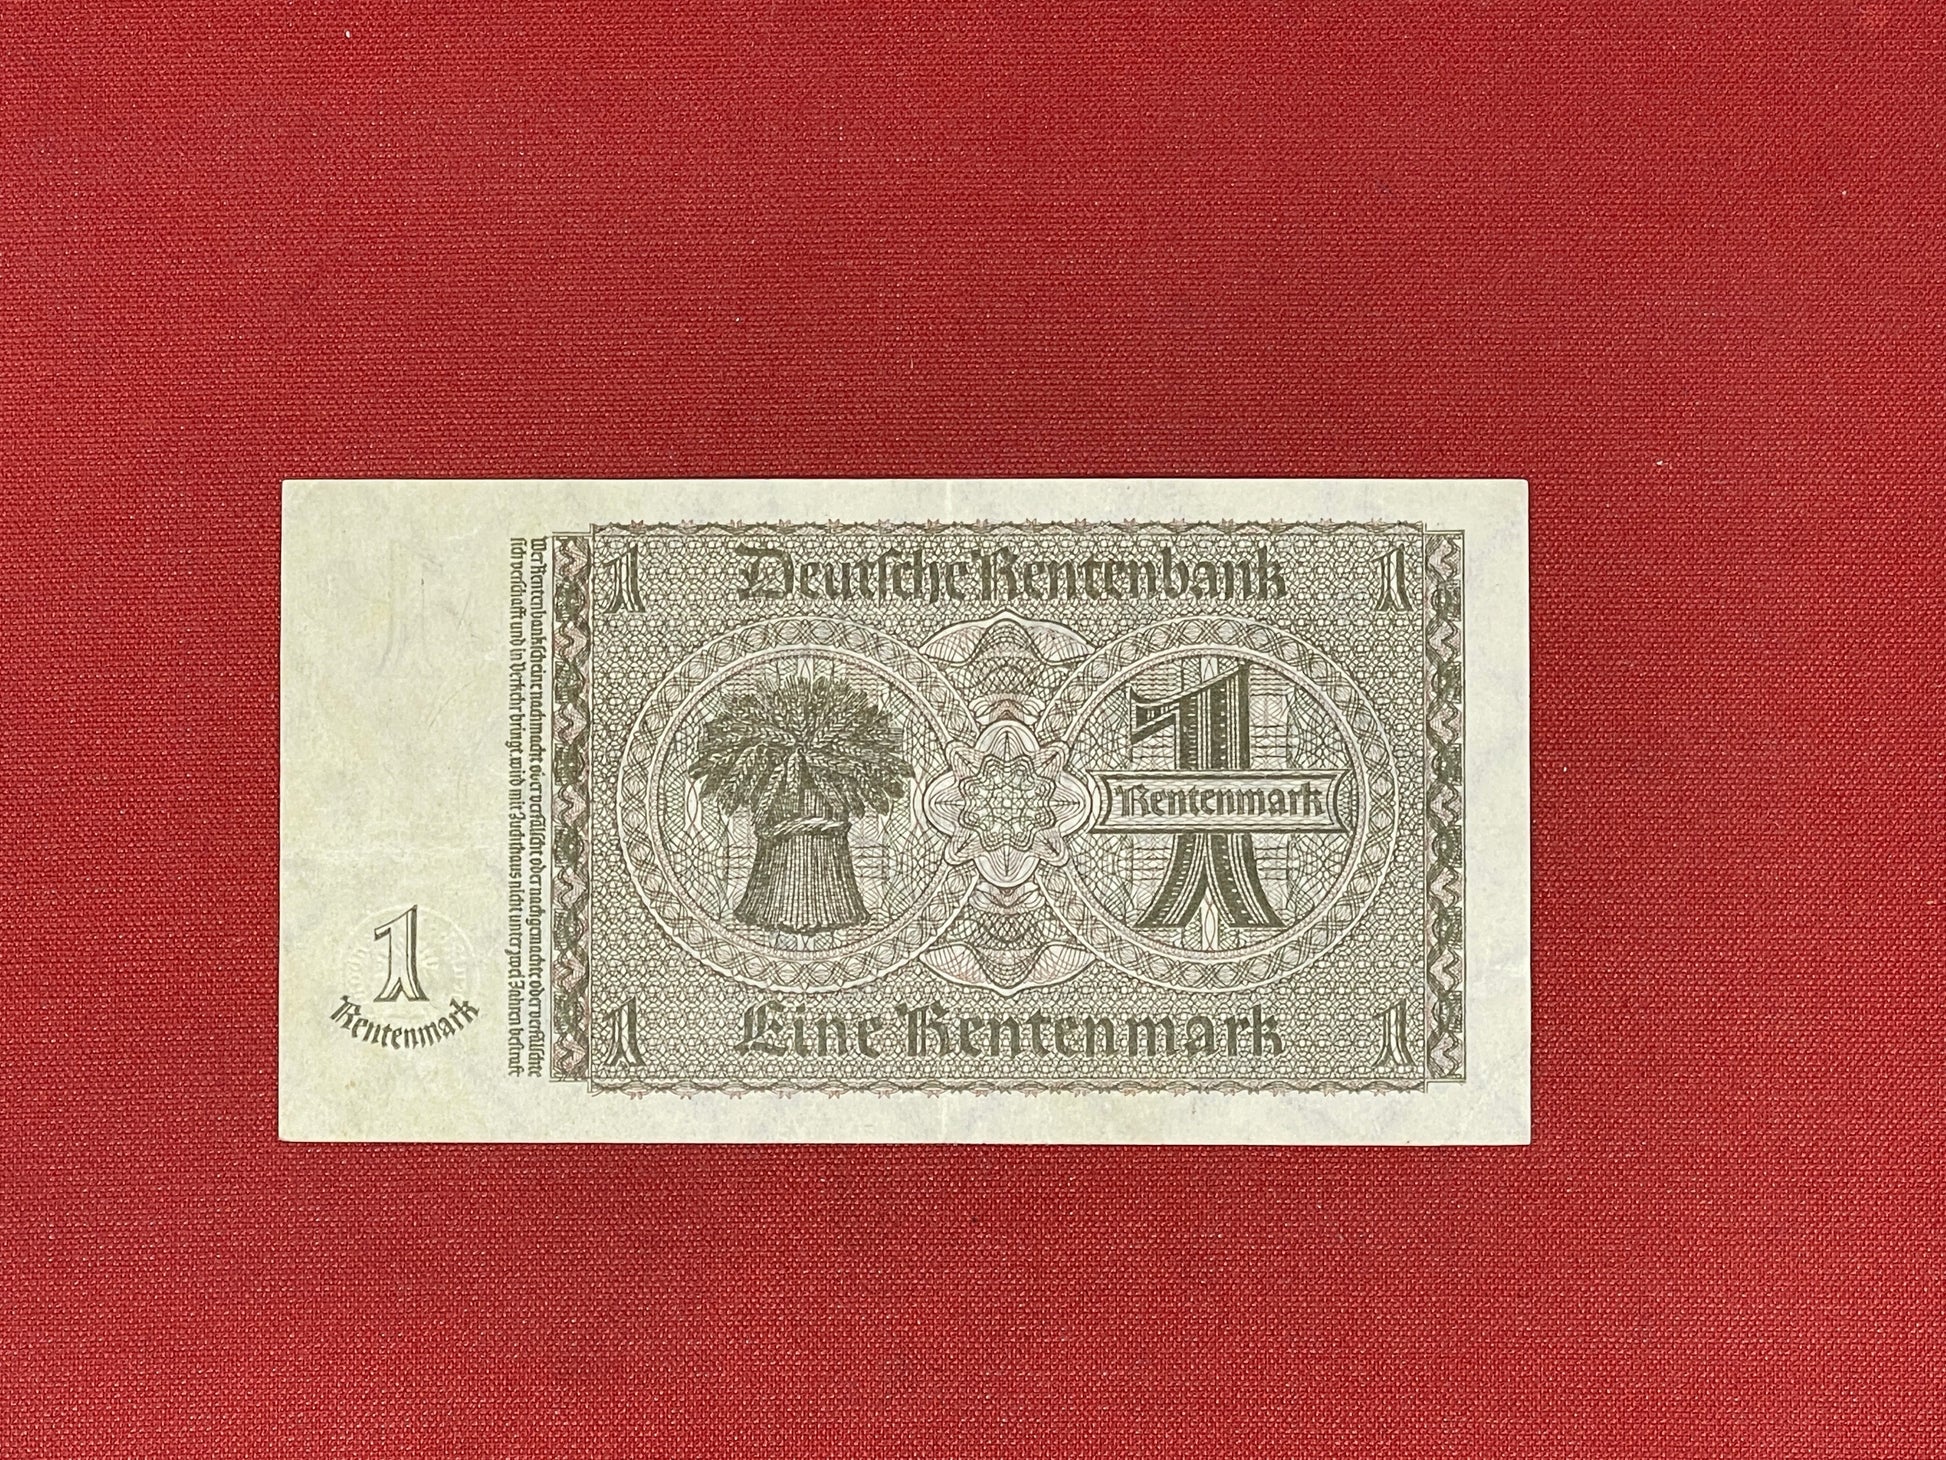 Germany 1 Rentenmark 1937 Banknote